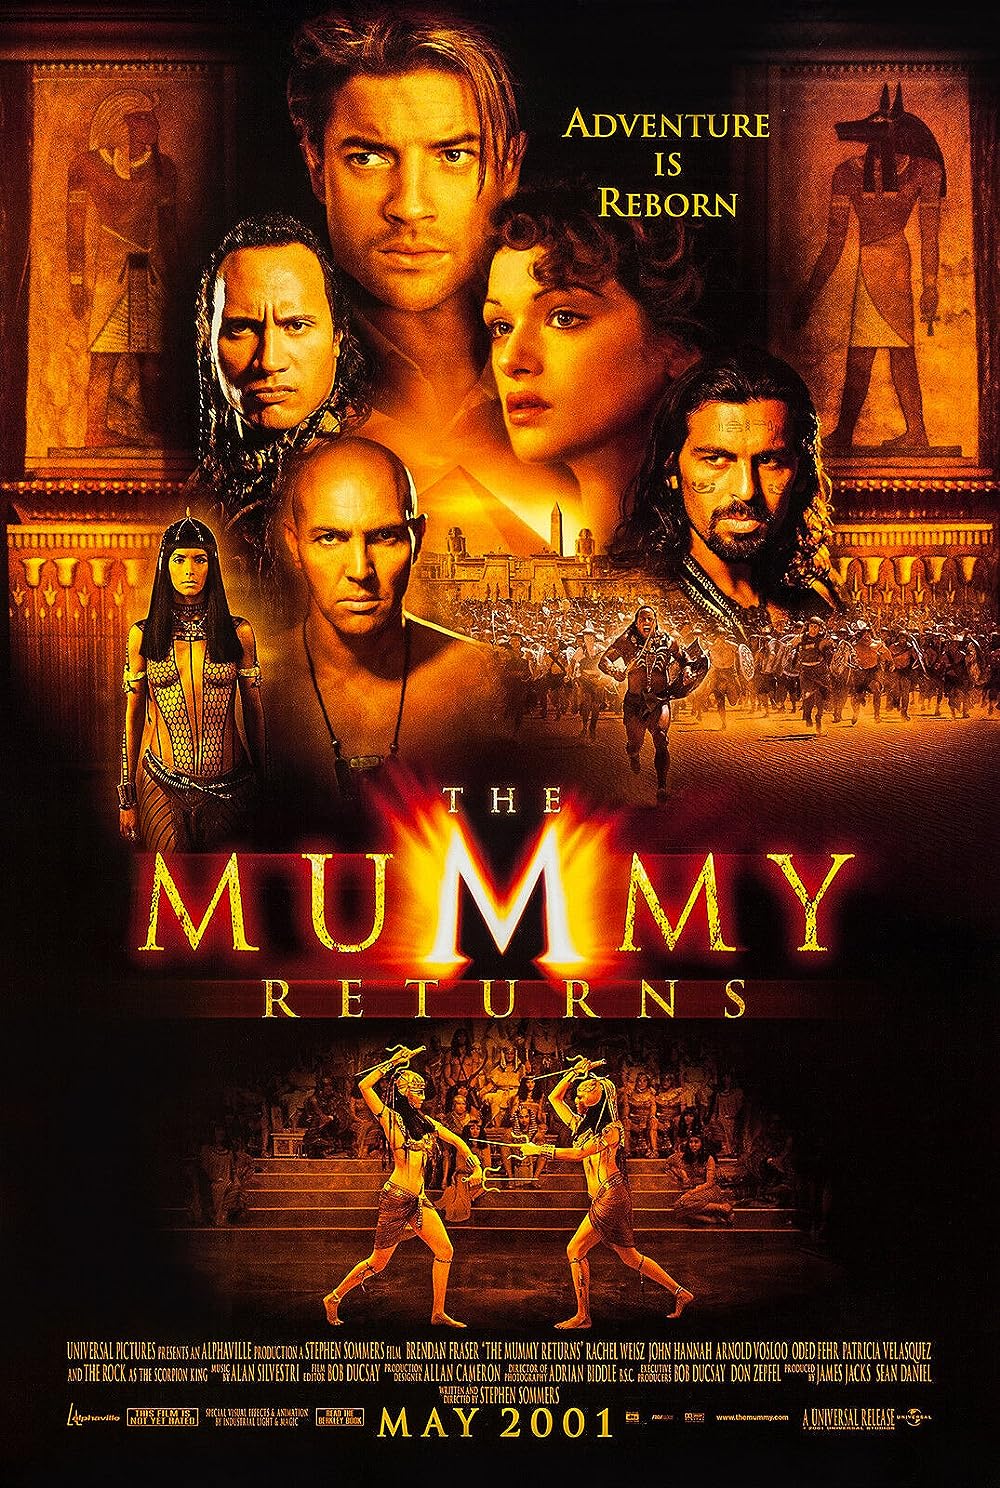 FULL MOVIE: The Mummy Returns (2001)